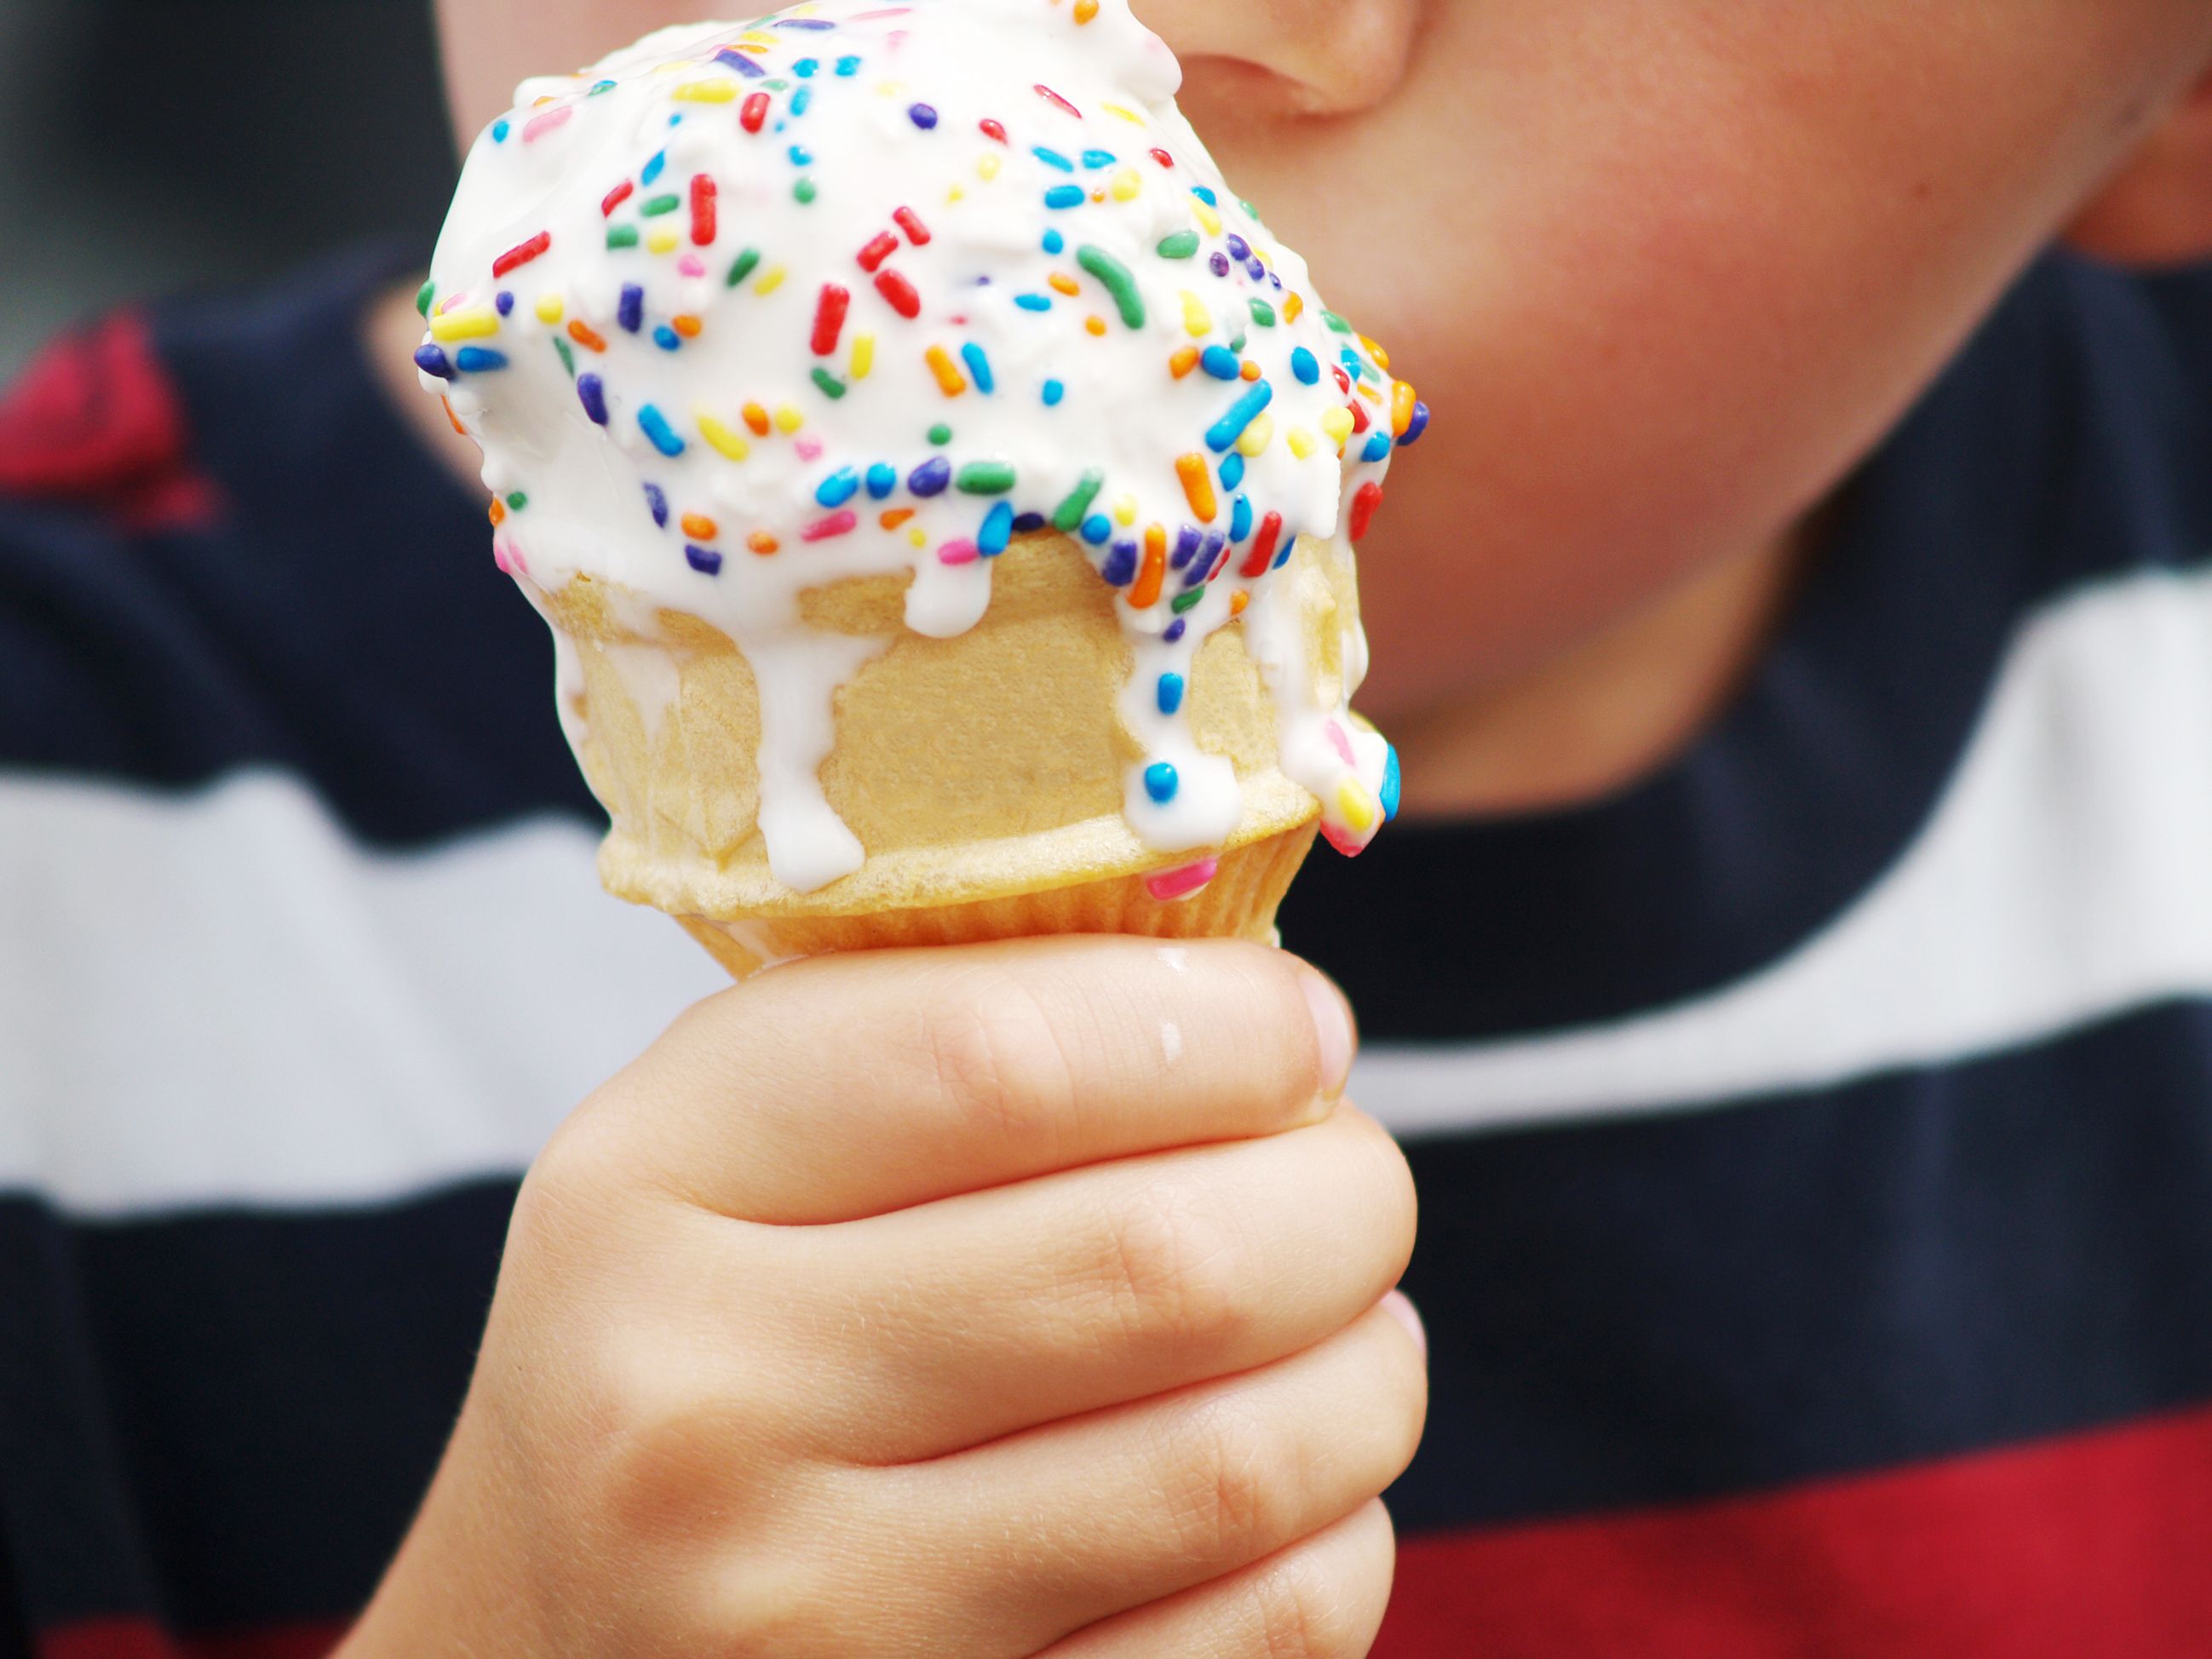 La mayoría de helados infantiles tienen un alto nivel calórico, según la OCU